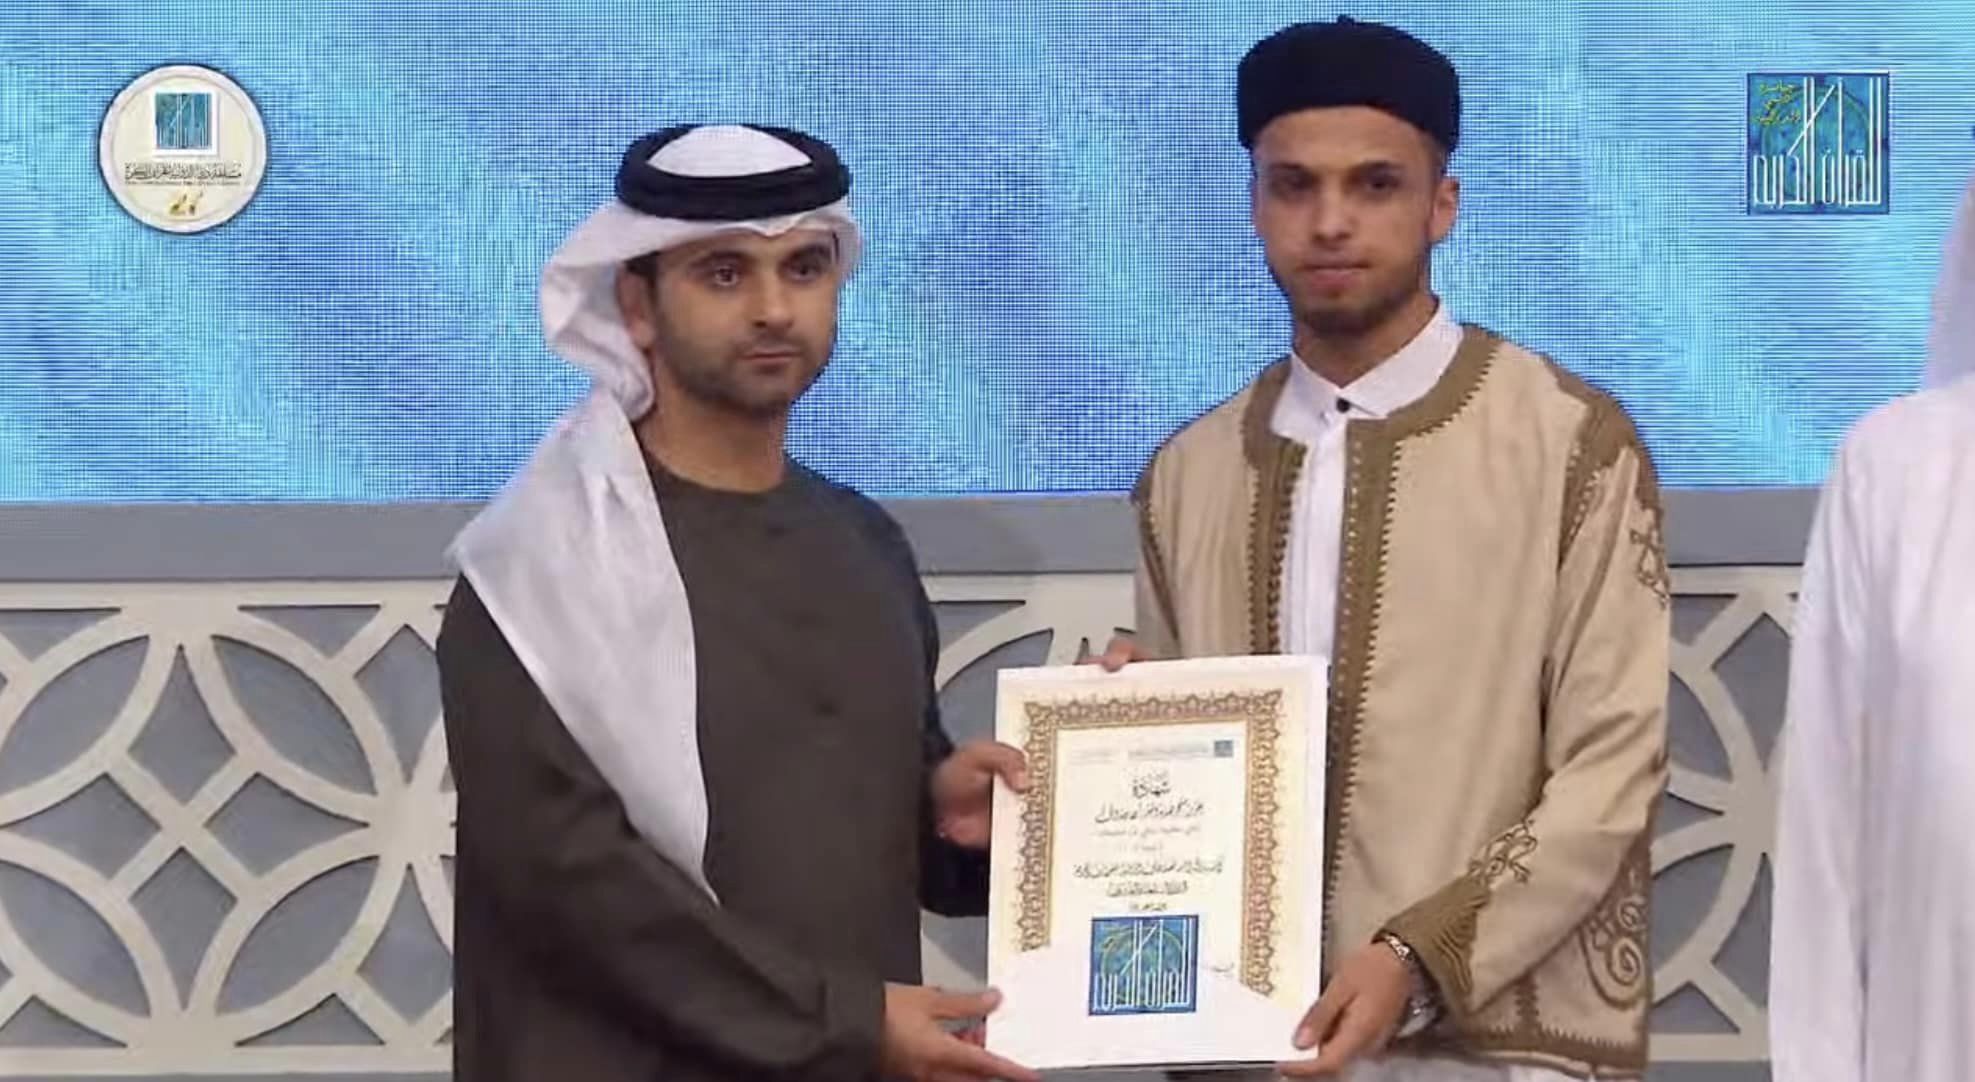  المقرئ  " ناجي عطية بن سليمان "  يتحصل على المركز الثاني في مسابقة جائزة دبي الدولية للقرآن الكريم 